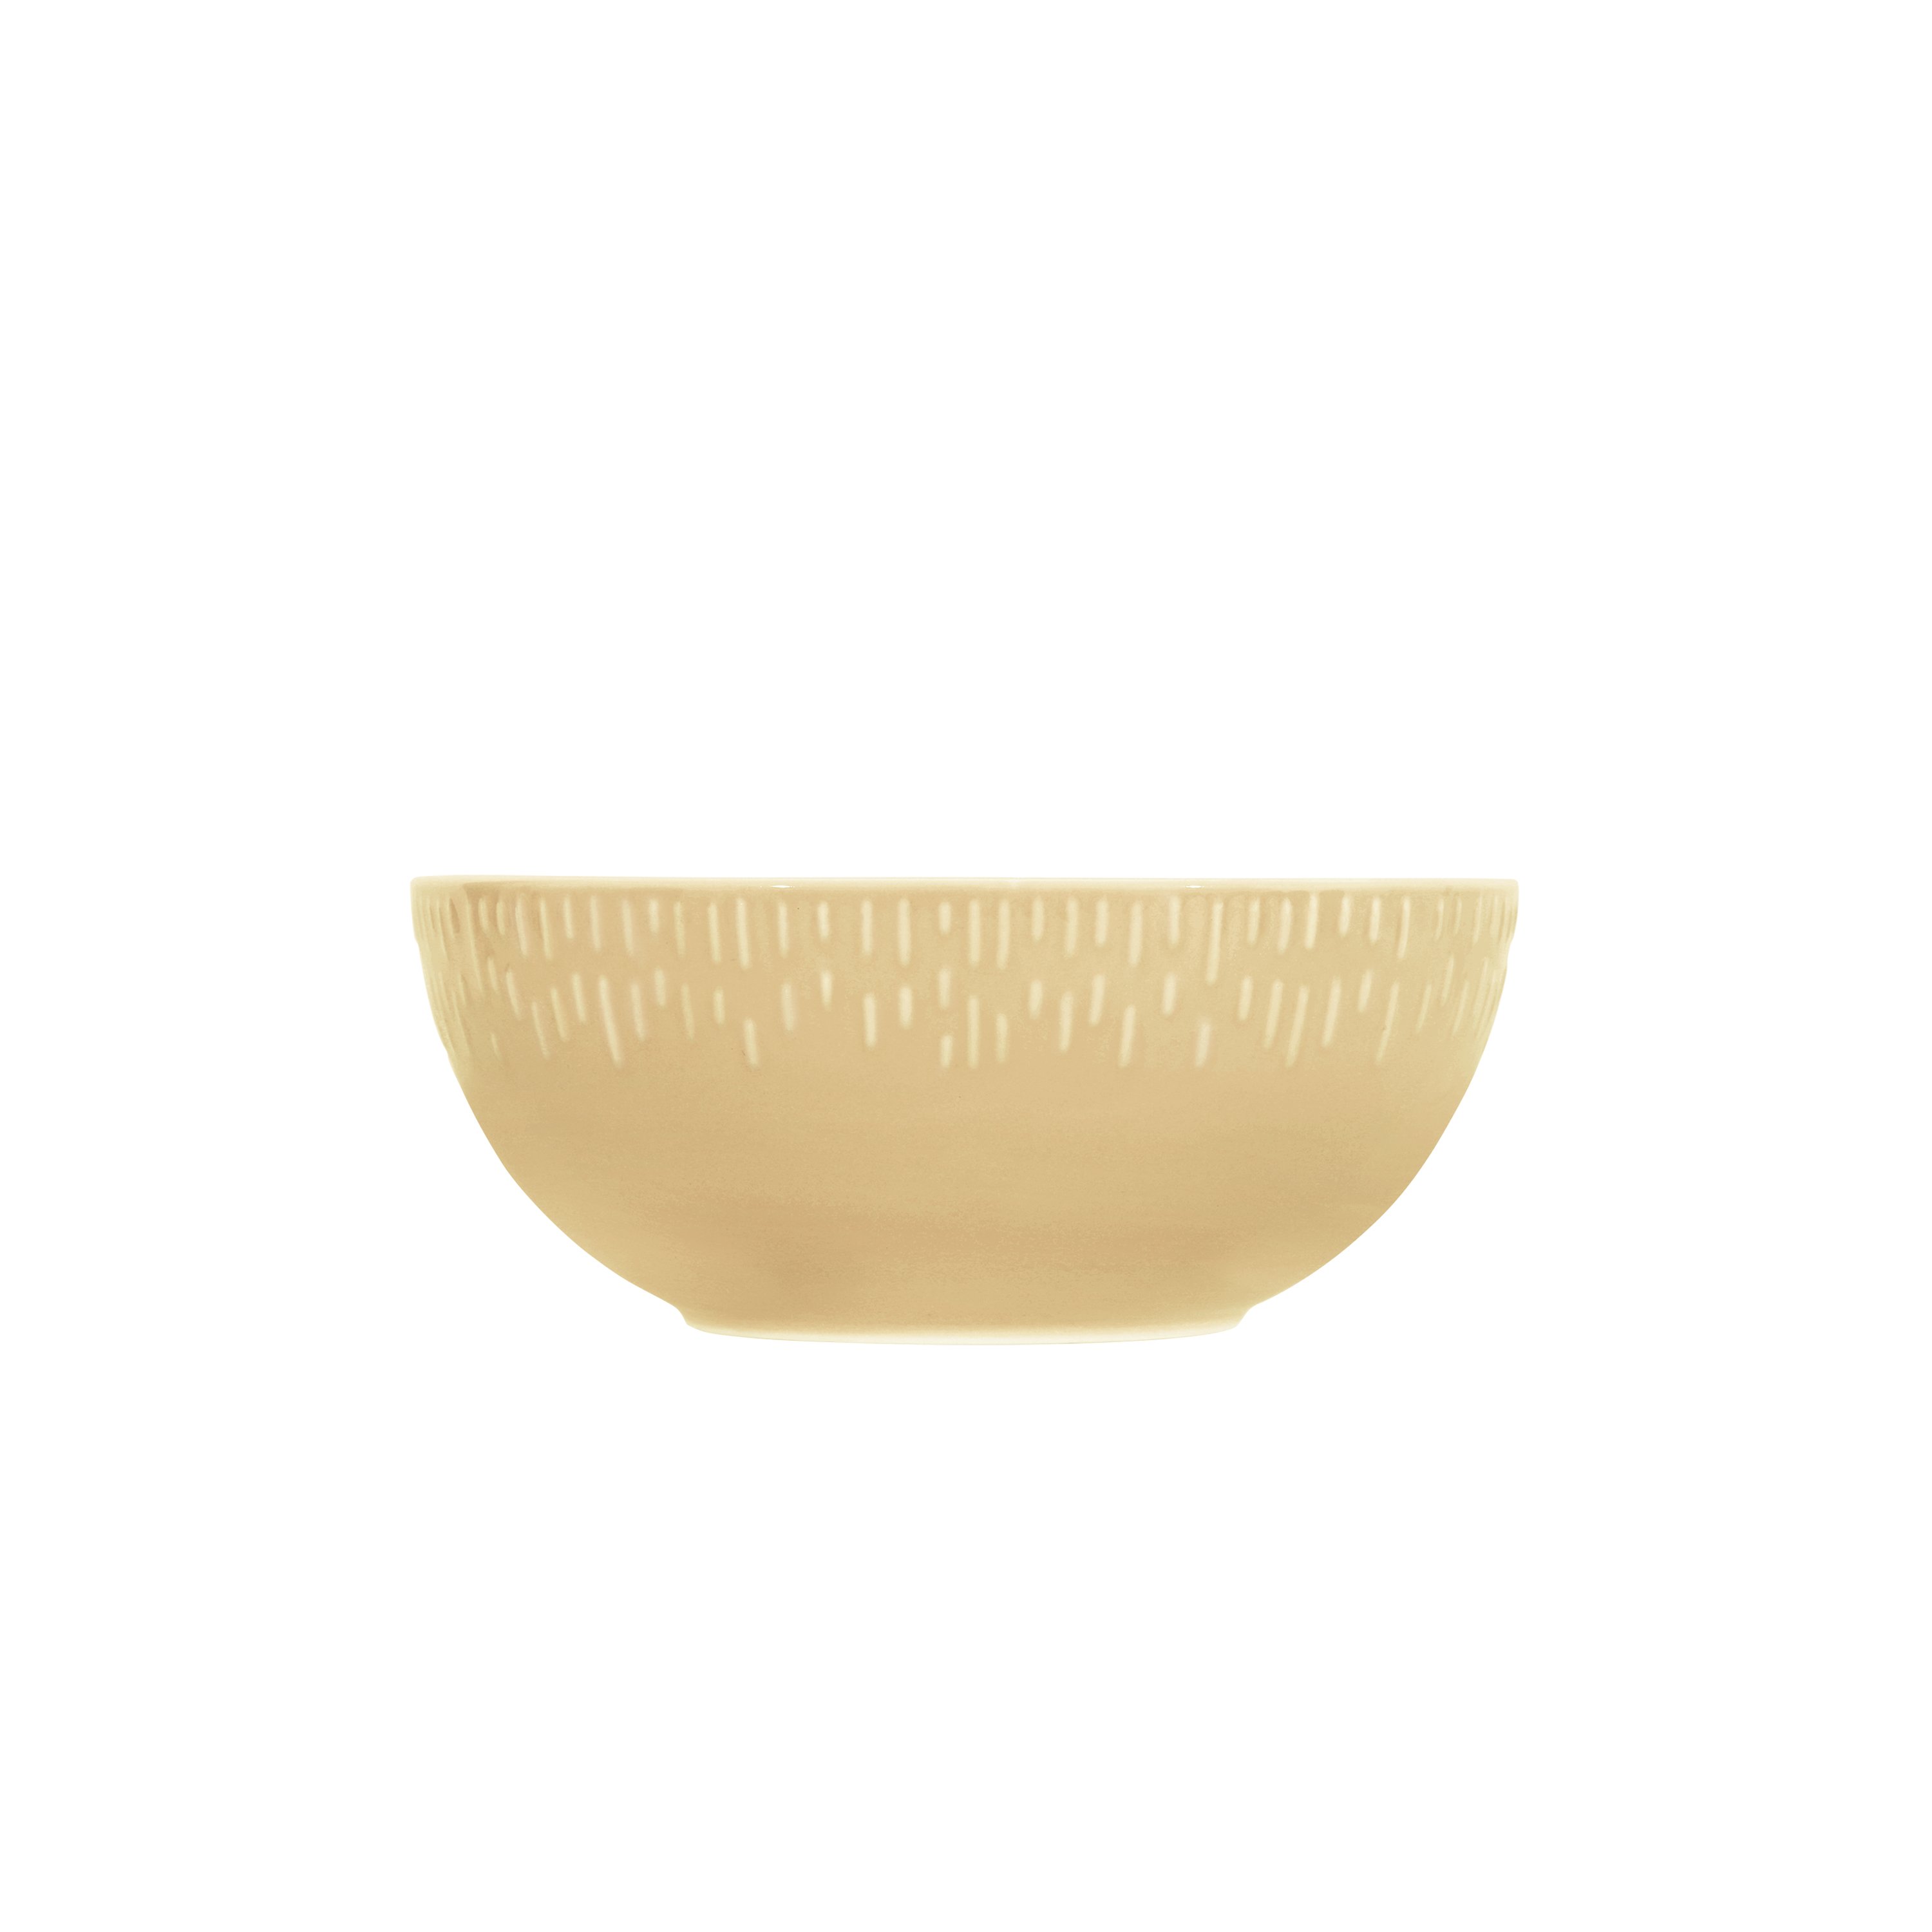 Aida - Life in Colour - Confetti - Mustard saladbowl w/relief porcelain (13390) - Hjemme og kjøkken